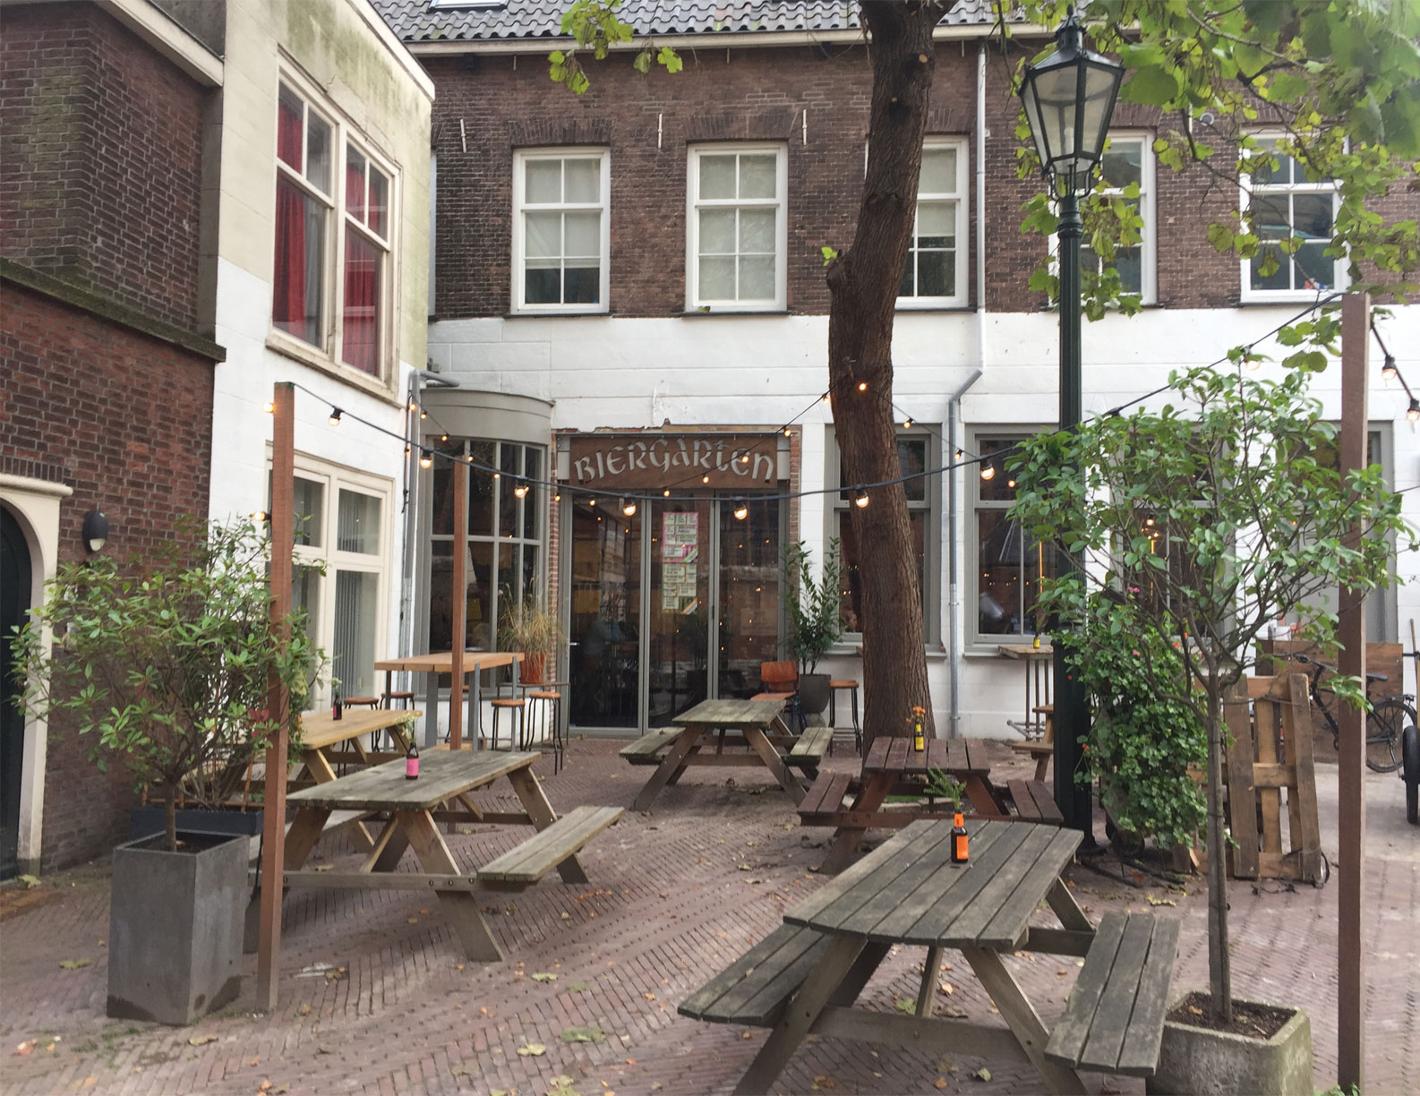 Foto Delfts Brouwhuis in Delft, Eten & drinken, Borrelen - #1